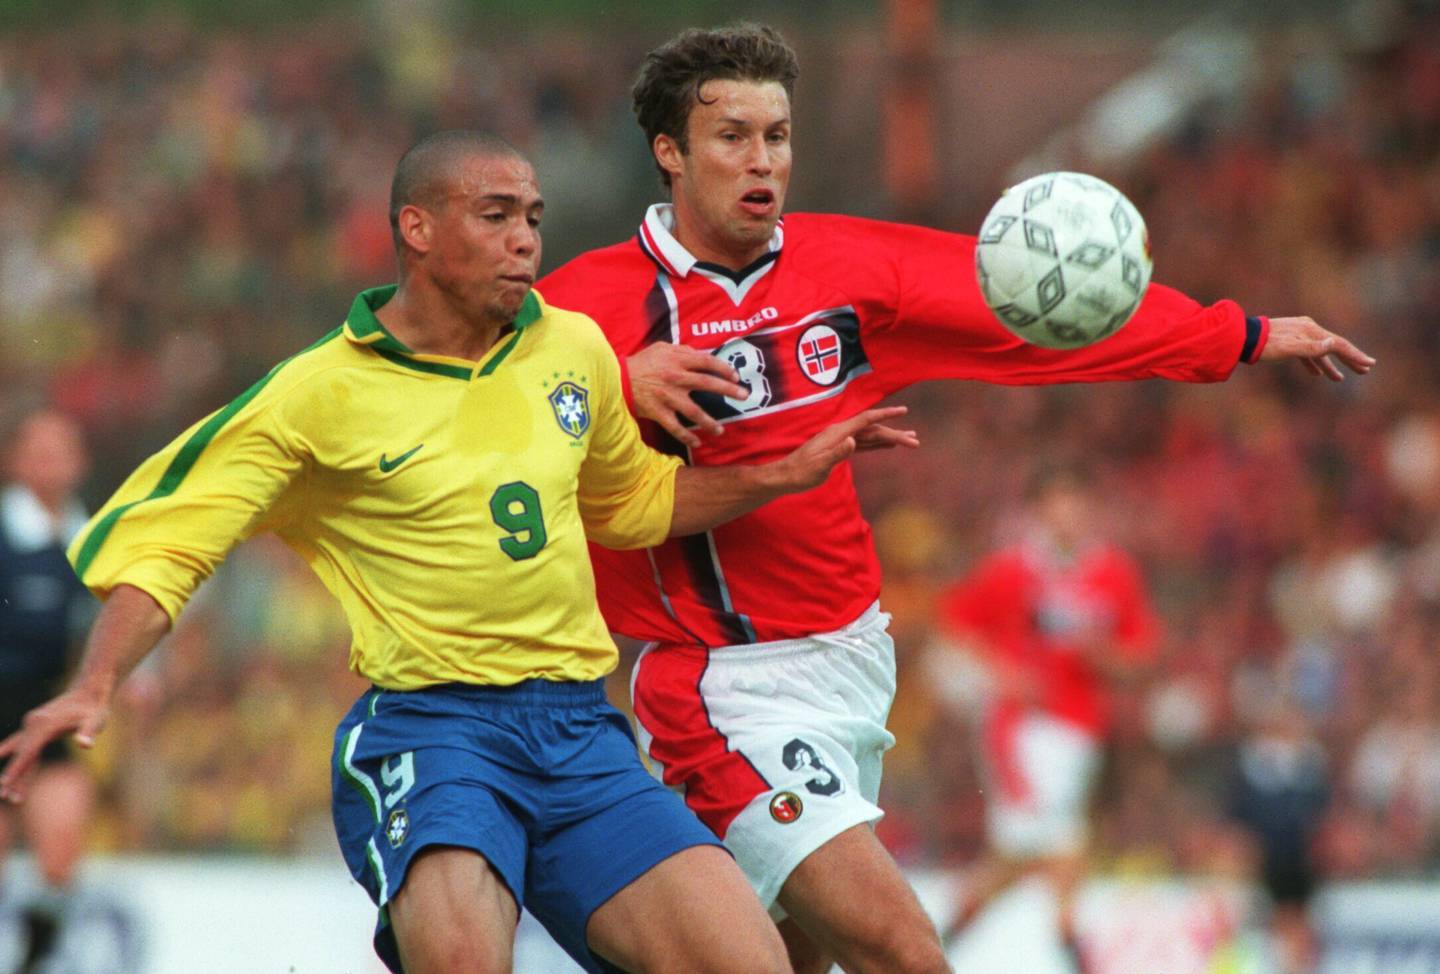 Ronaldo i aksjon for Brasil mot Norge i en landskamp på Ullevaal stadion i 1997. Her er han i duell med Ronny Johnsen. Foto: Erik Johansen / NTB